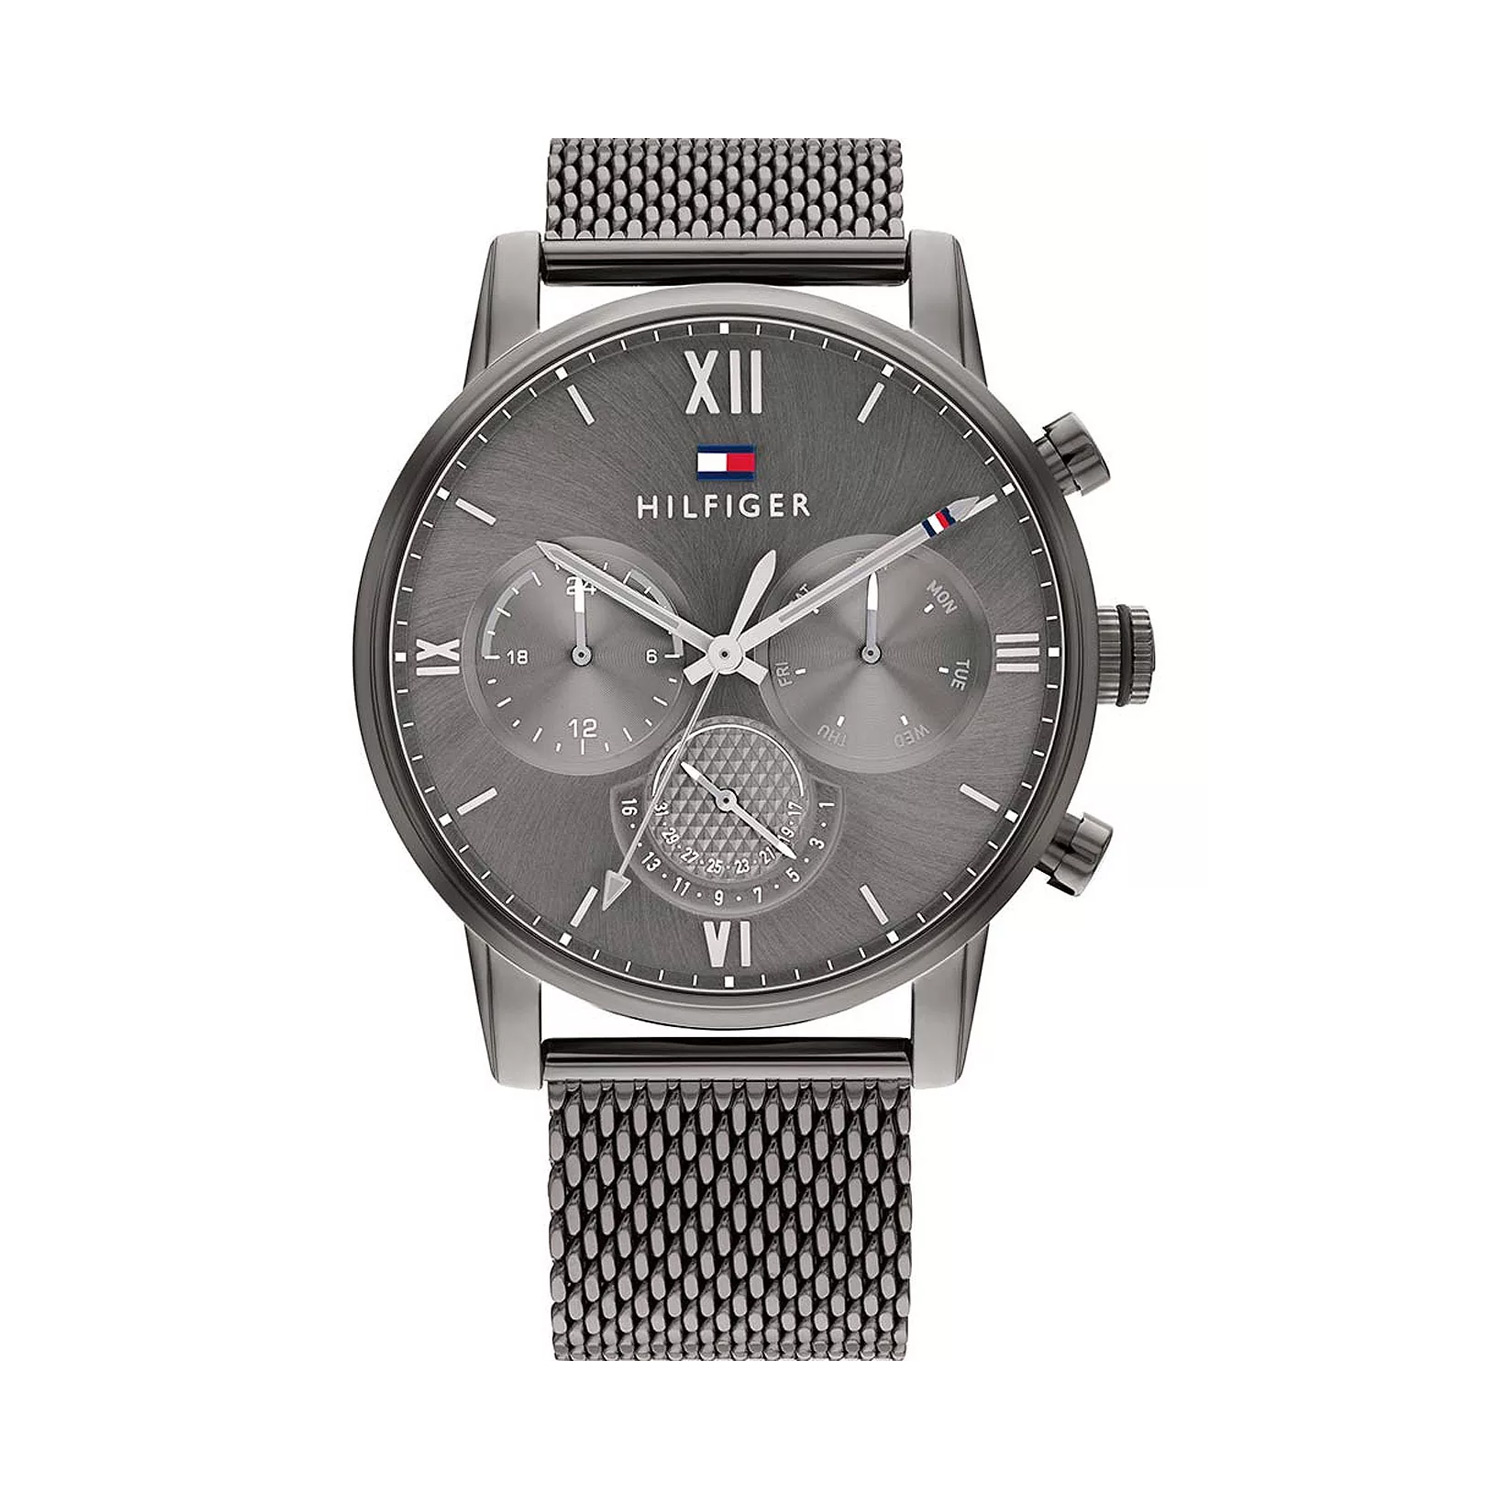 24348円 人気デザイナー 男性用腕時計 Tommy Hilfiger Mens Analogue Classic Quartz Watch with Stainless Steel Strap 1791597 並行輸入品